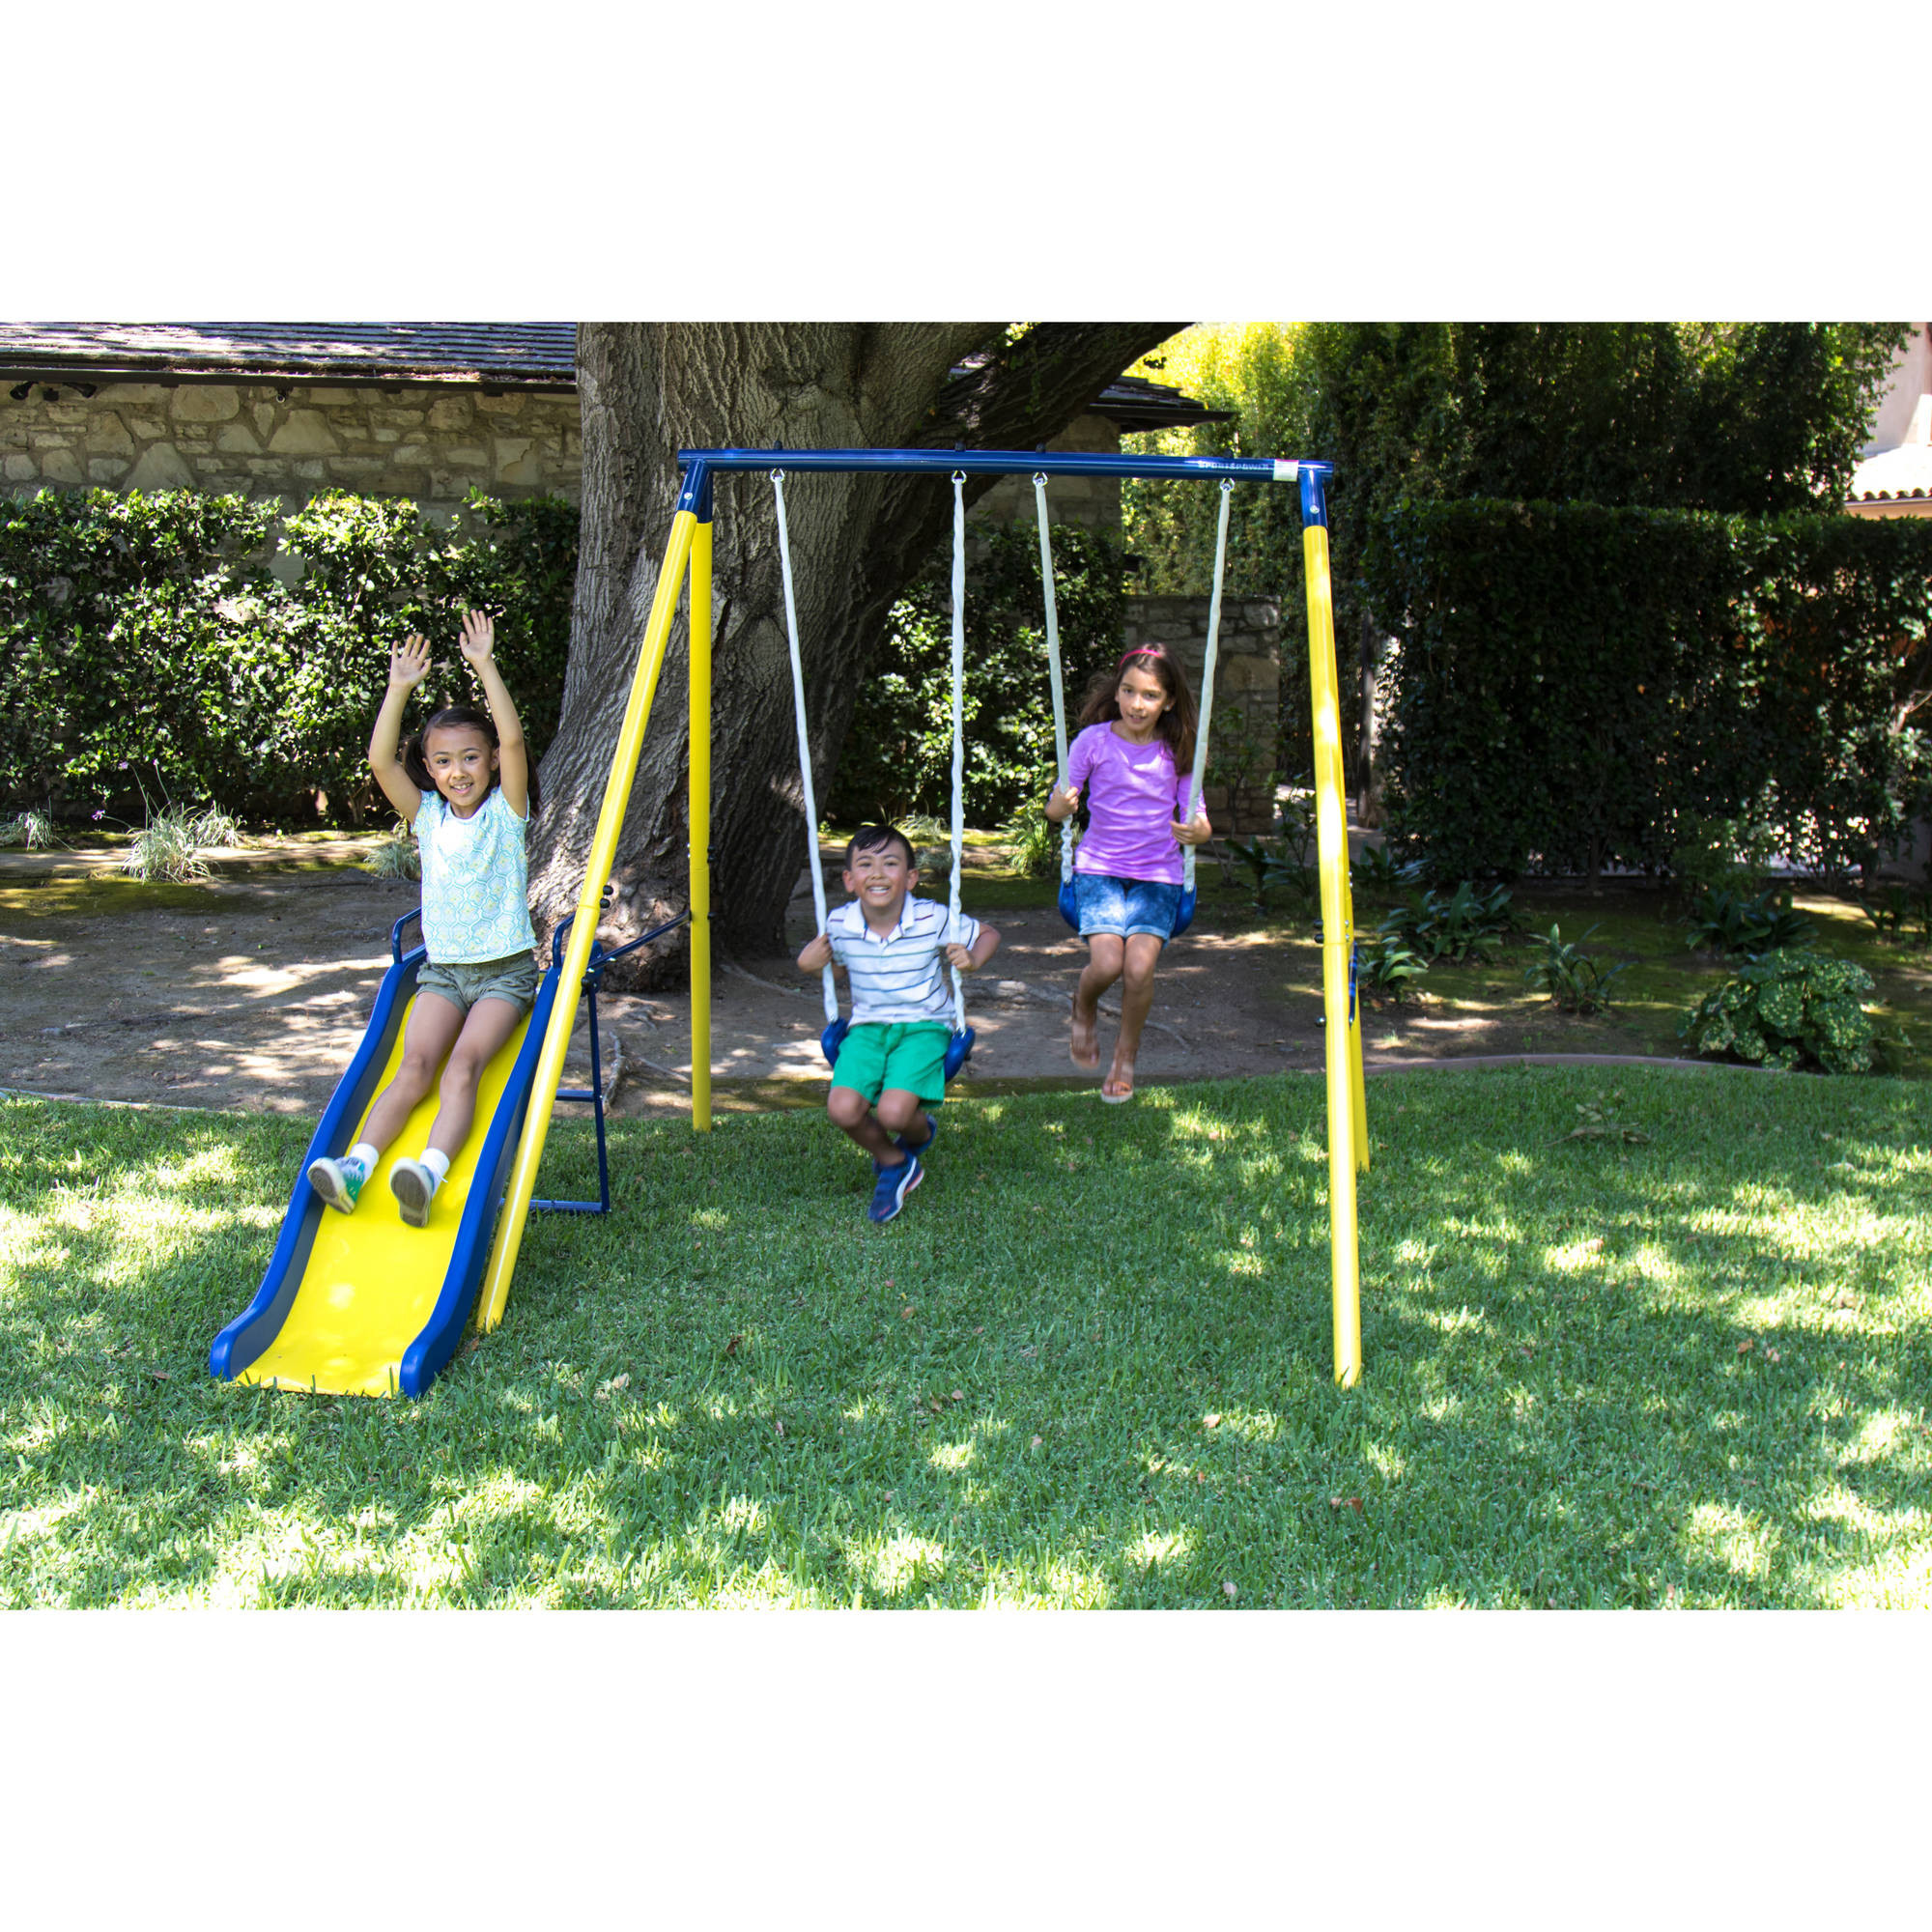 Backyard Swing For Kids
 Sportspower Power Play Time Metal Swing Set Outdoor Kids